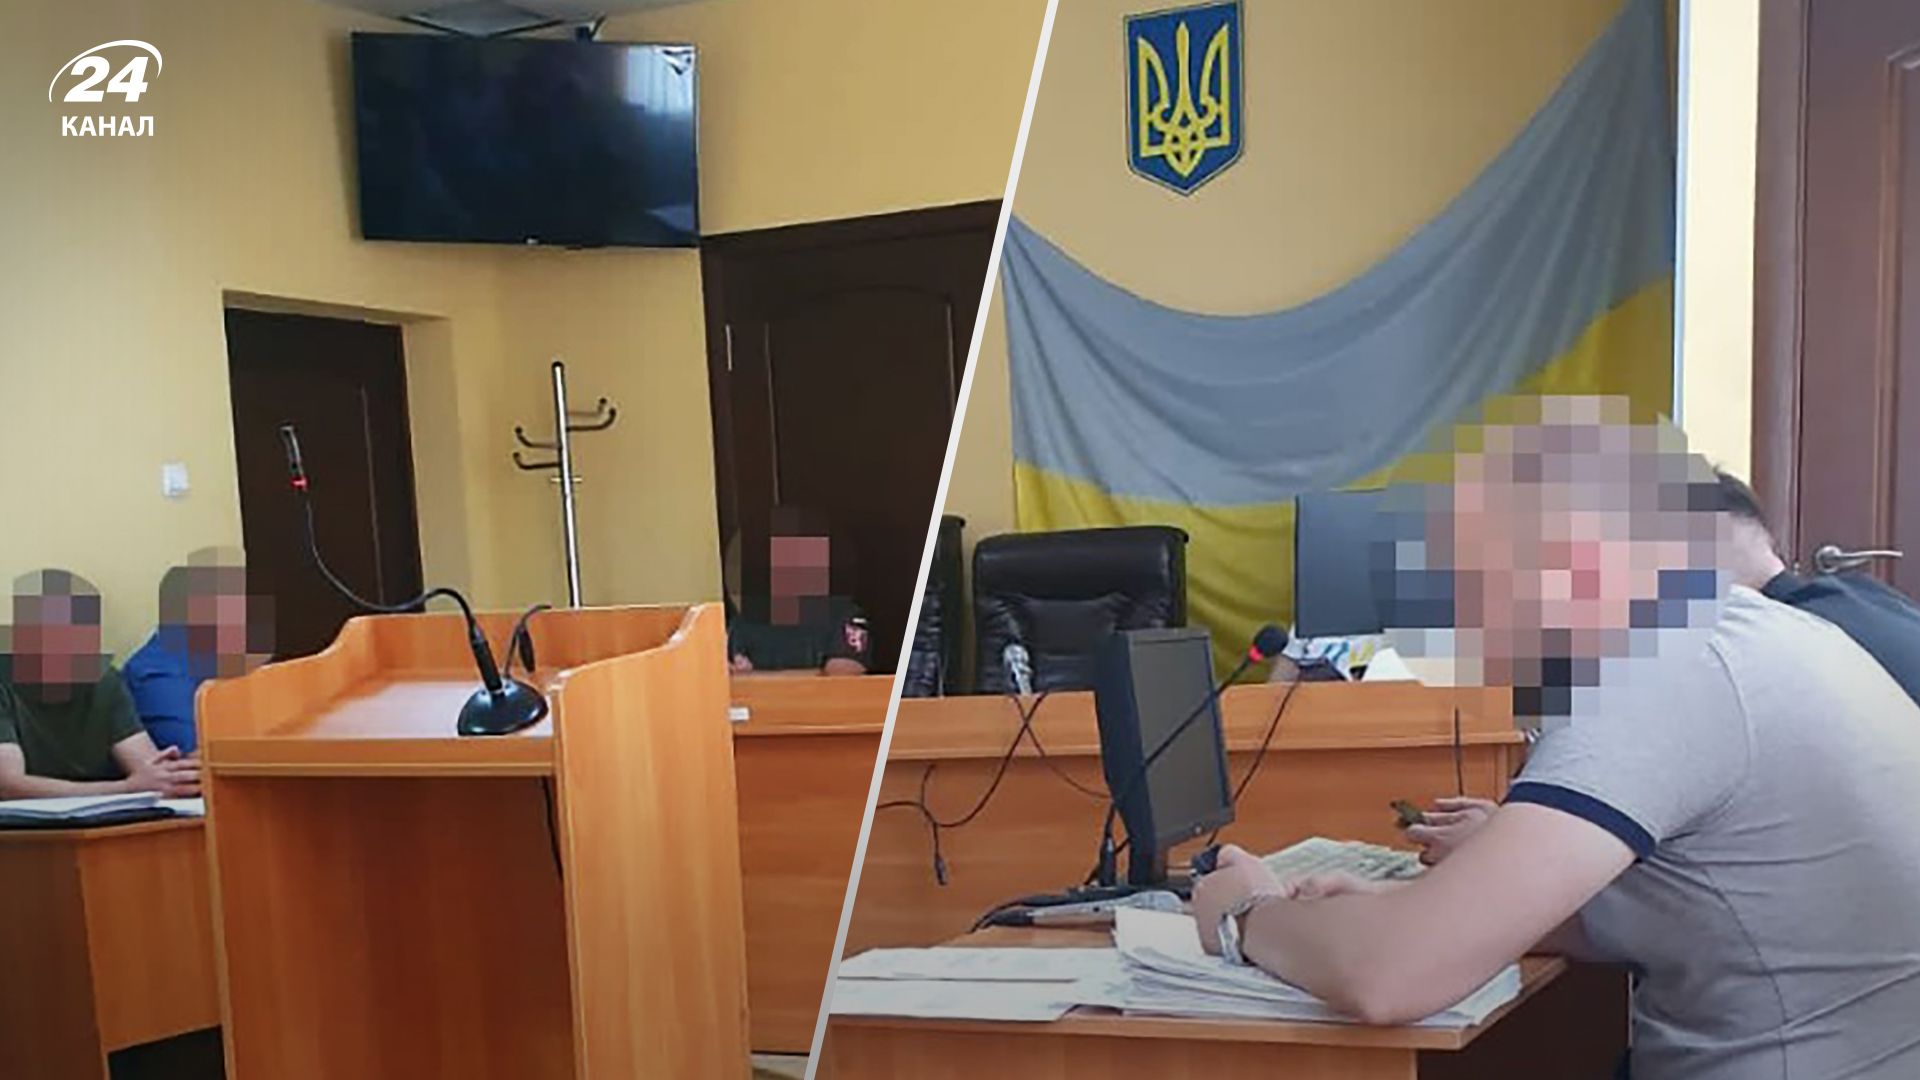 Ровненский военком избил подчиненного - какую меру пресечения ему избрал суд - 24 Канал